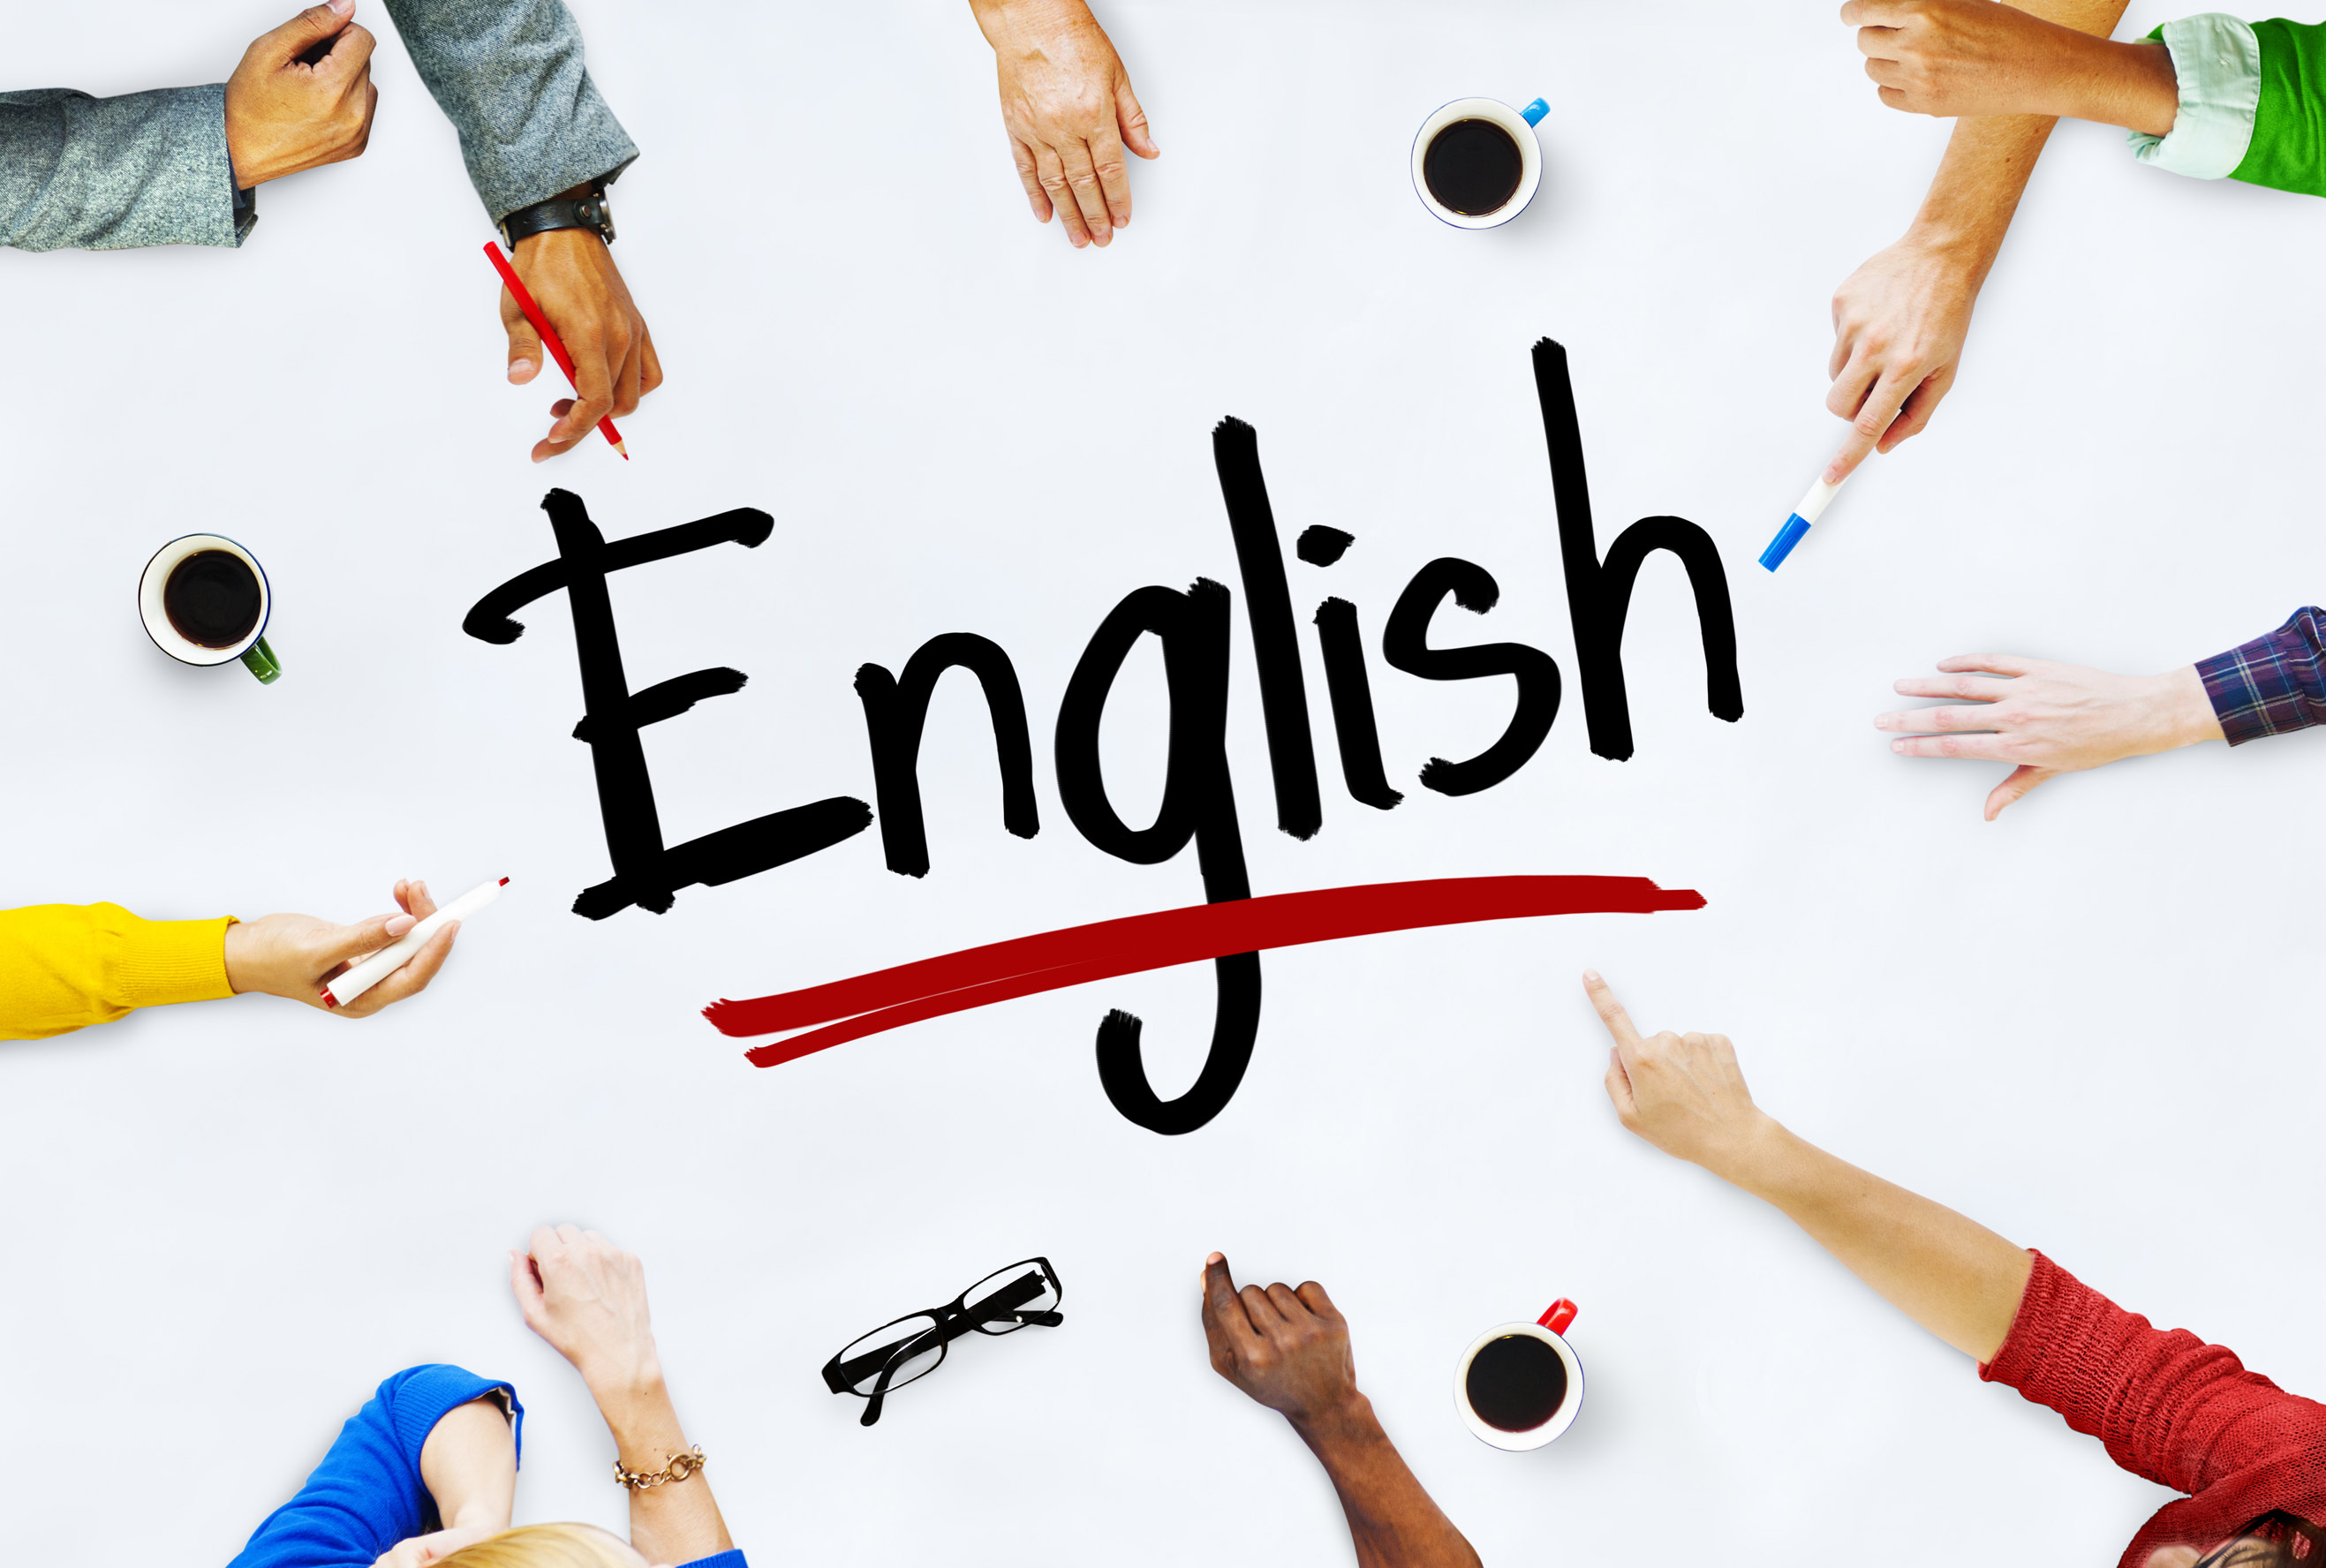 Хотите быстро освоить английский язык? Предлагаем эффективные способы изучения языка!